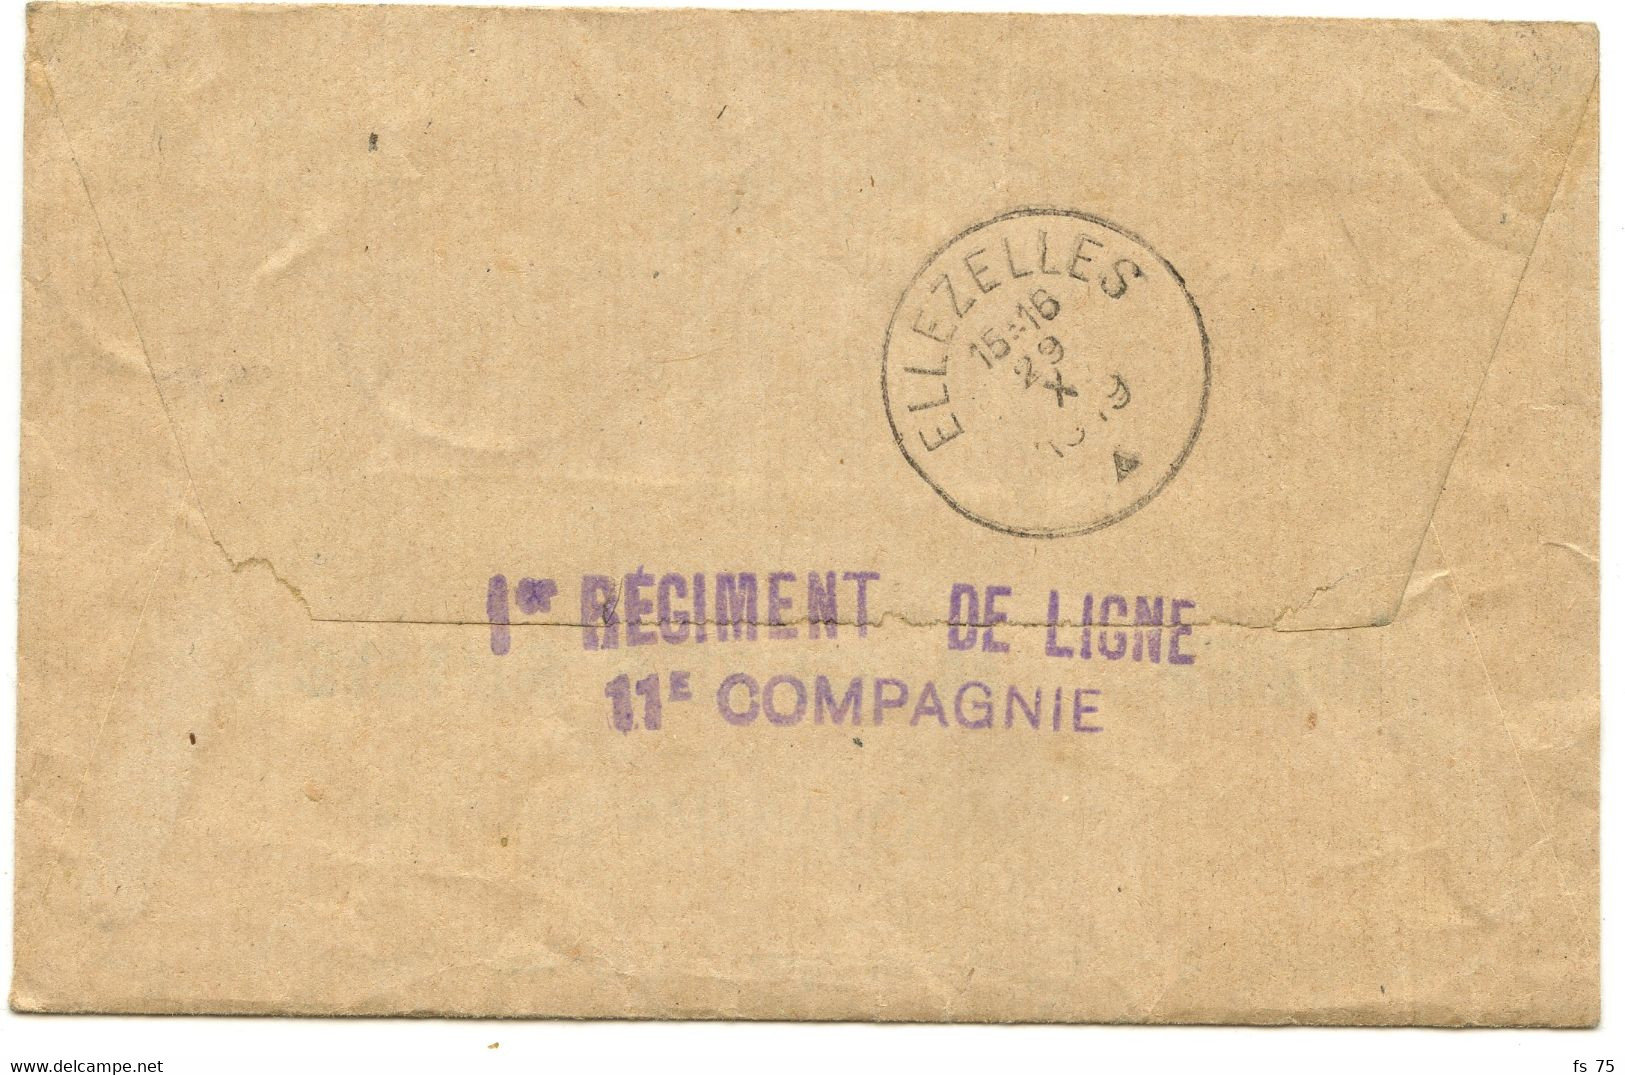 BELGIQUE - LOT DE 4 LETTRES AVEC TEXTE D'UN SOLDAT BELGE A EN-TETE Y.M.C.A., 1919 - Belgische Armee